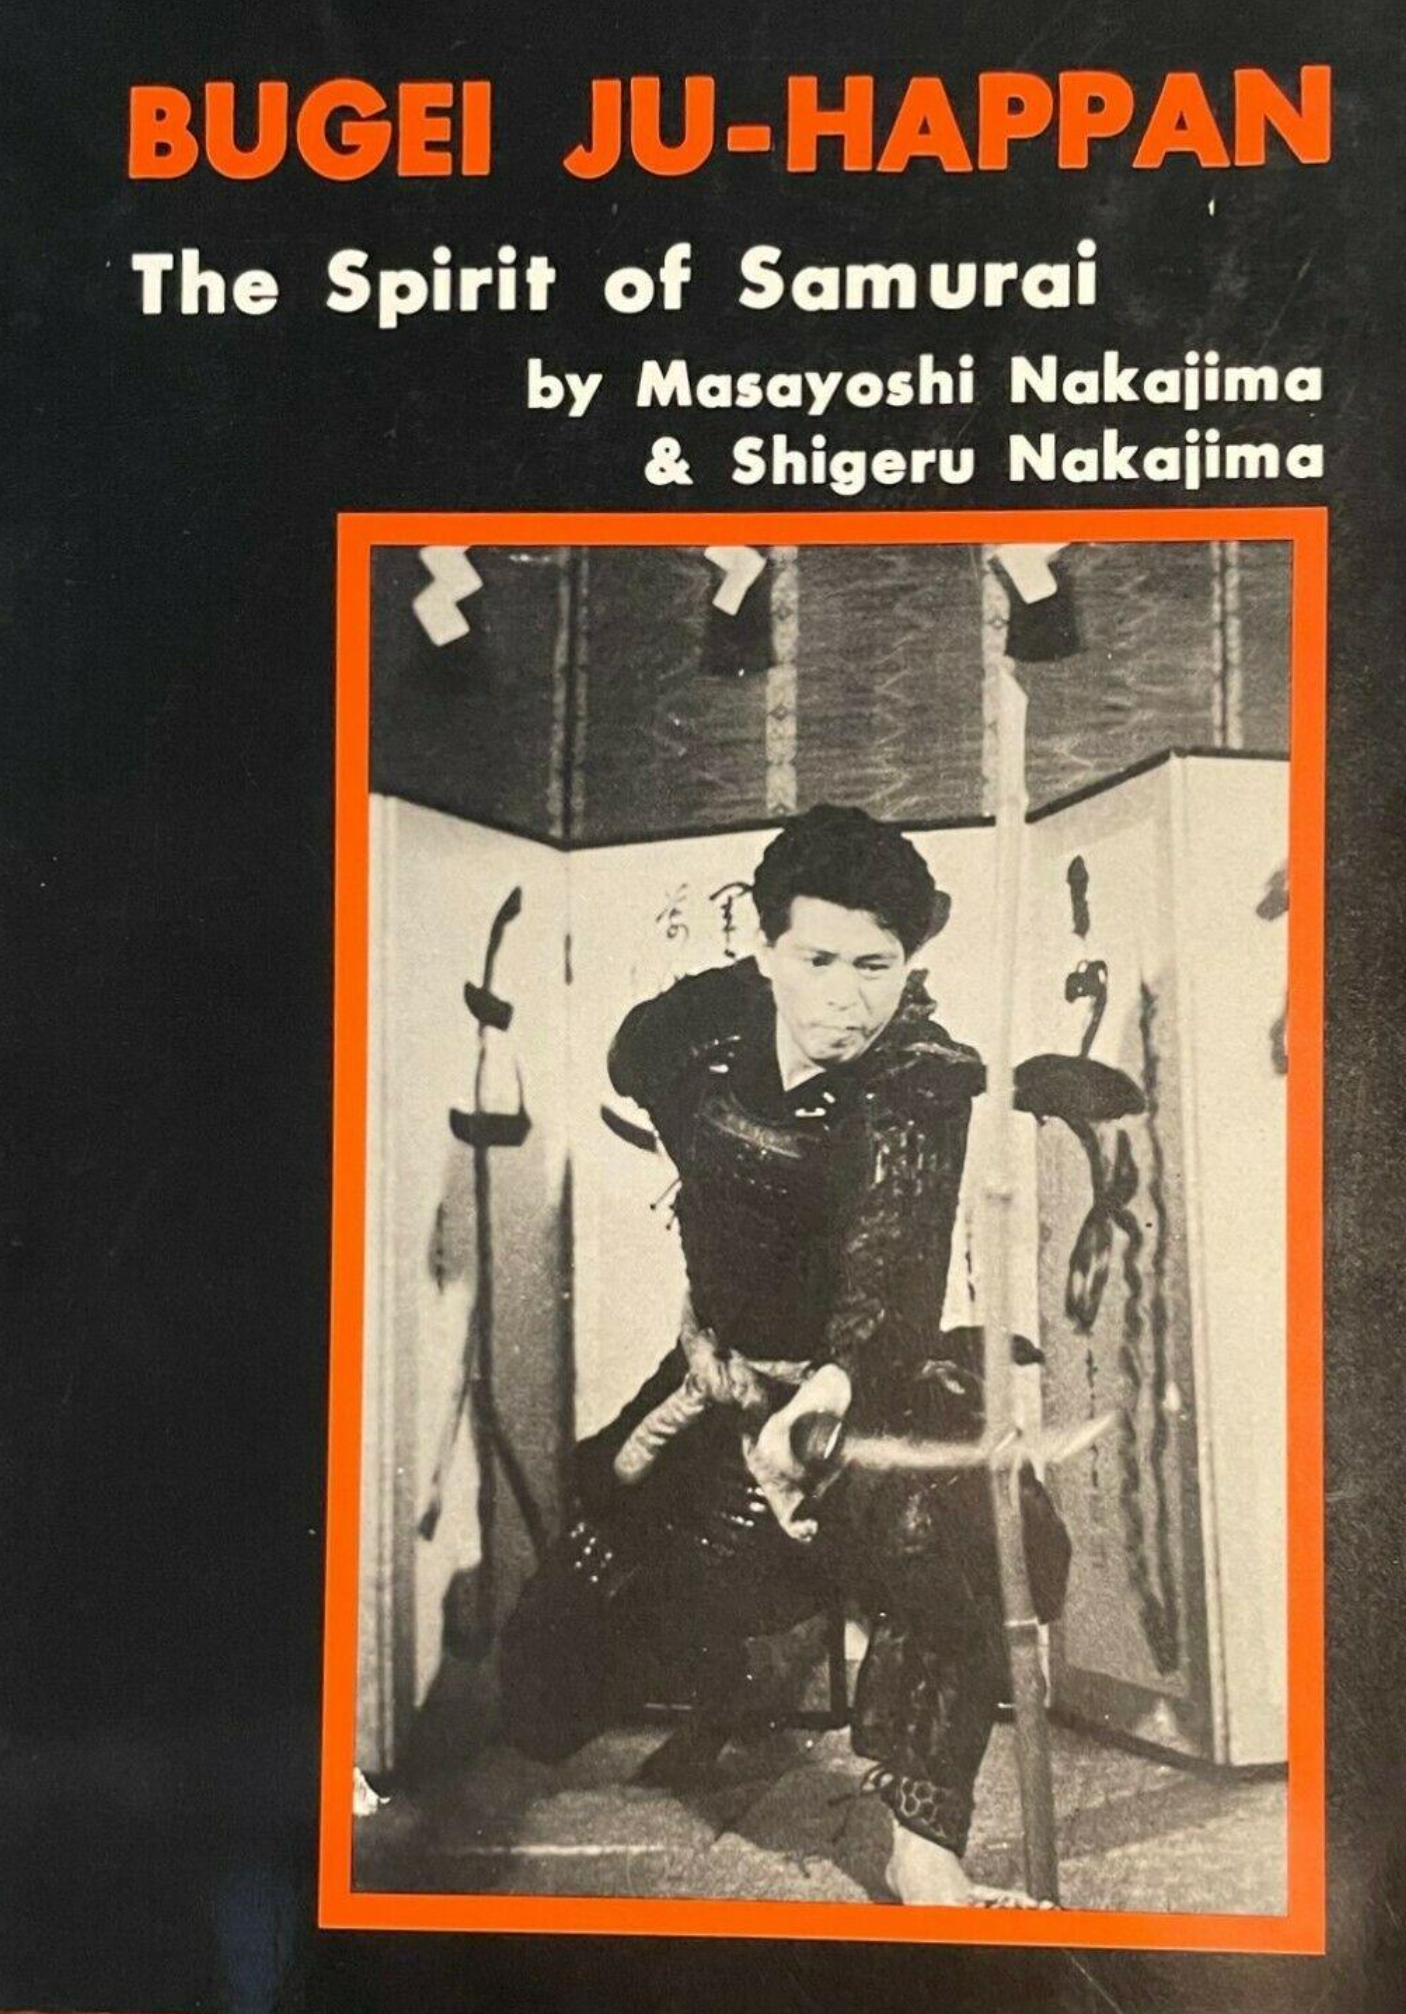 Bugei Ju-Happan: The Spirit of Samurai Book by Masayoshi Nakajima & Shigeru Nakajima (Preowned)